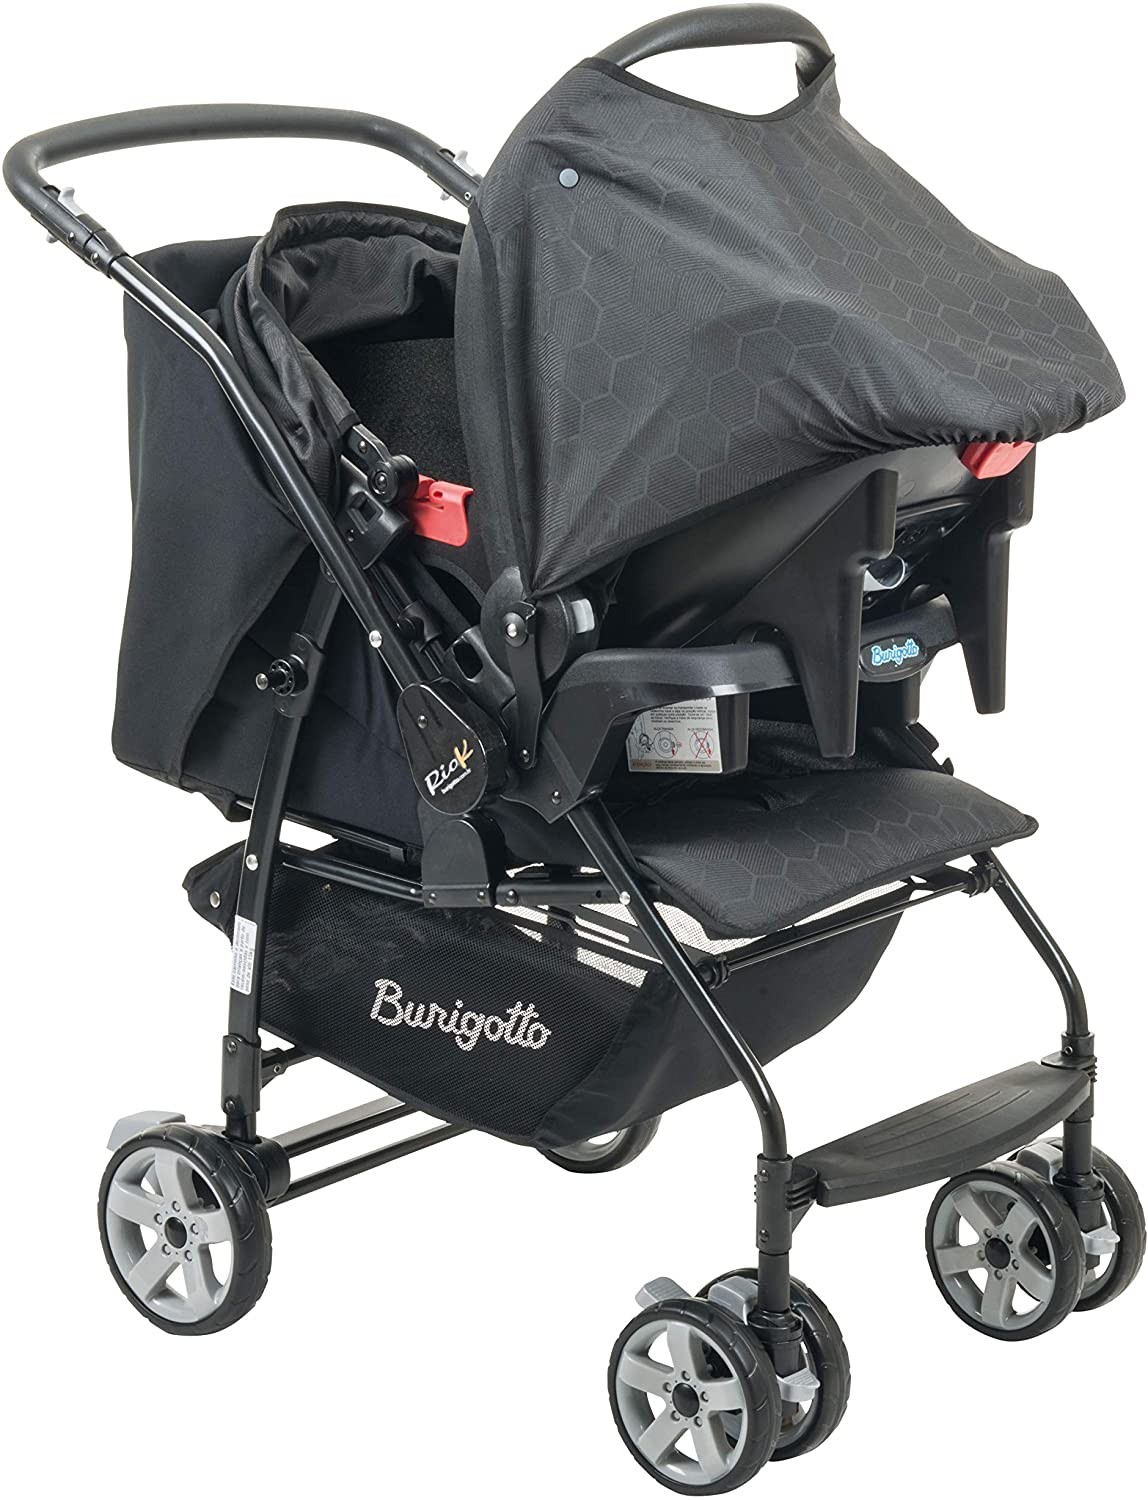 Burigotto Rio K + Touring Evolution SE suporte crianças de até 15 kg (Foto: Reprodução/Amazon)